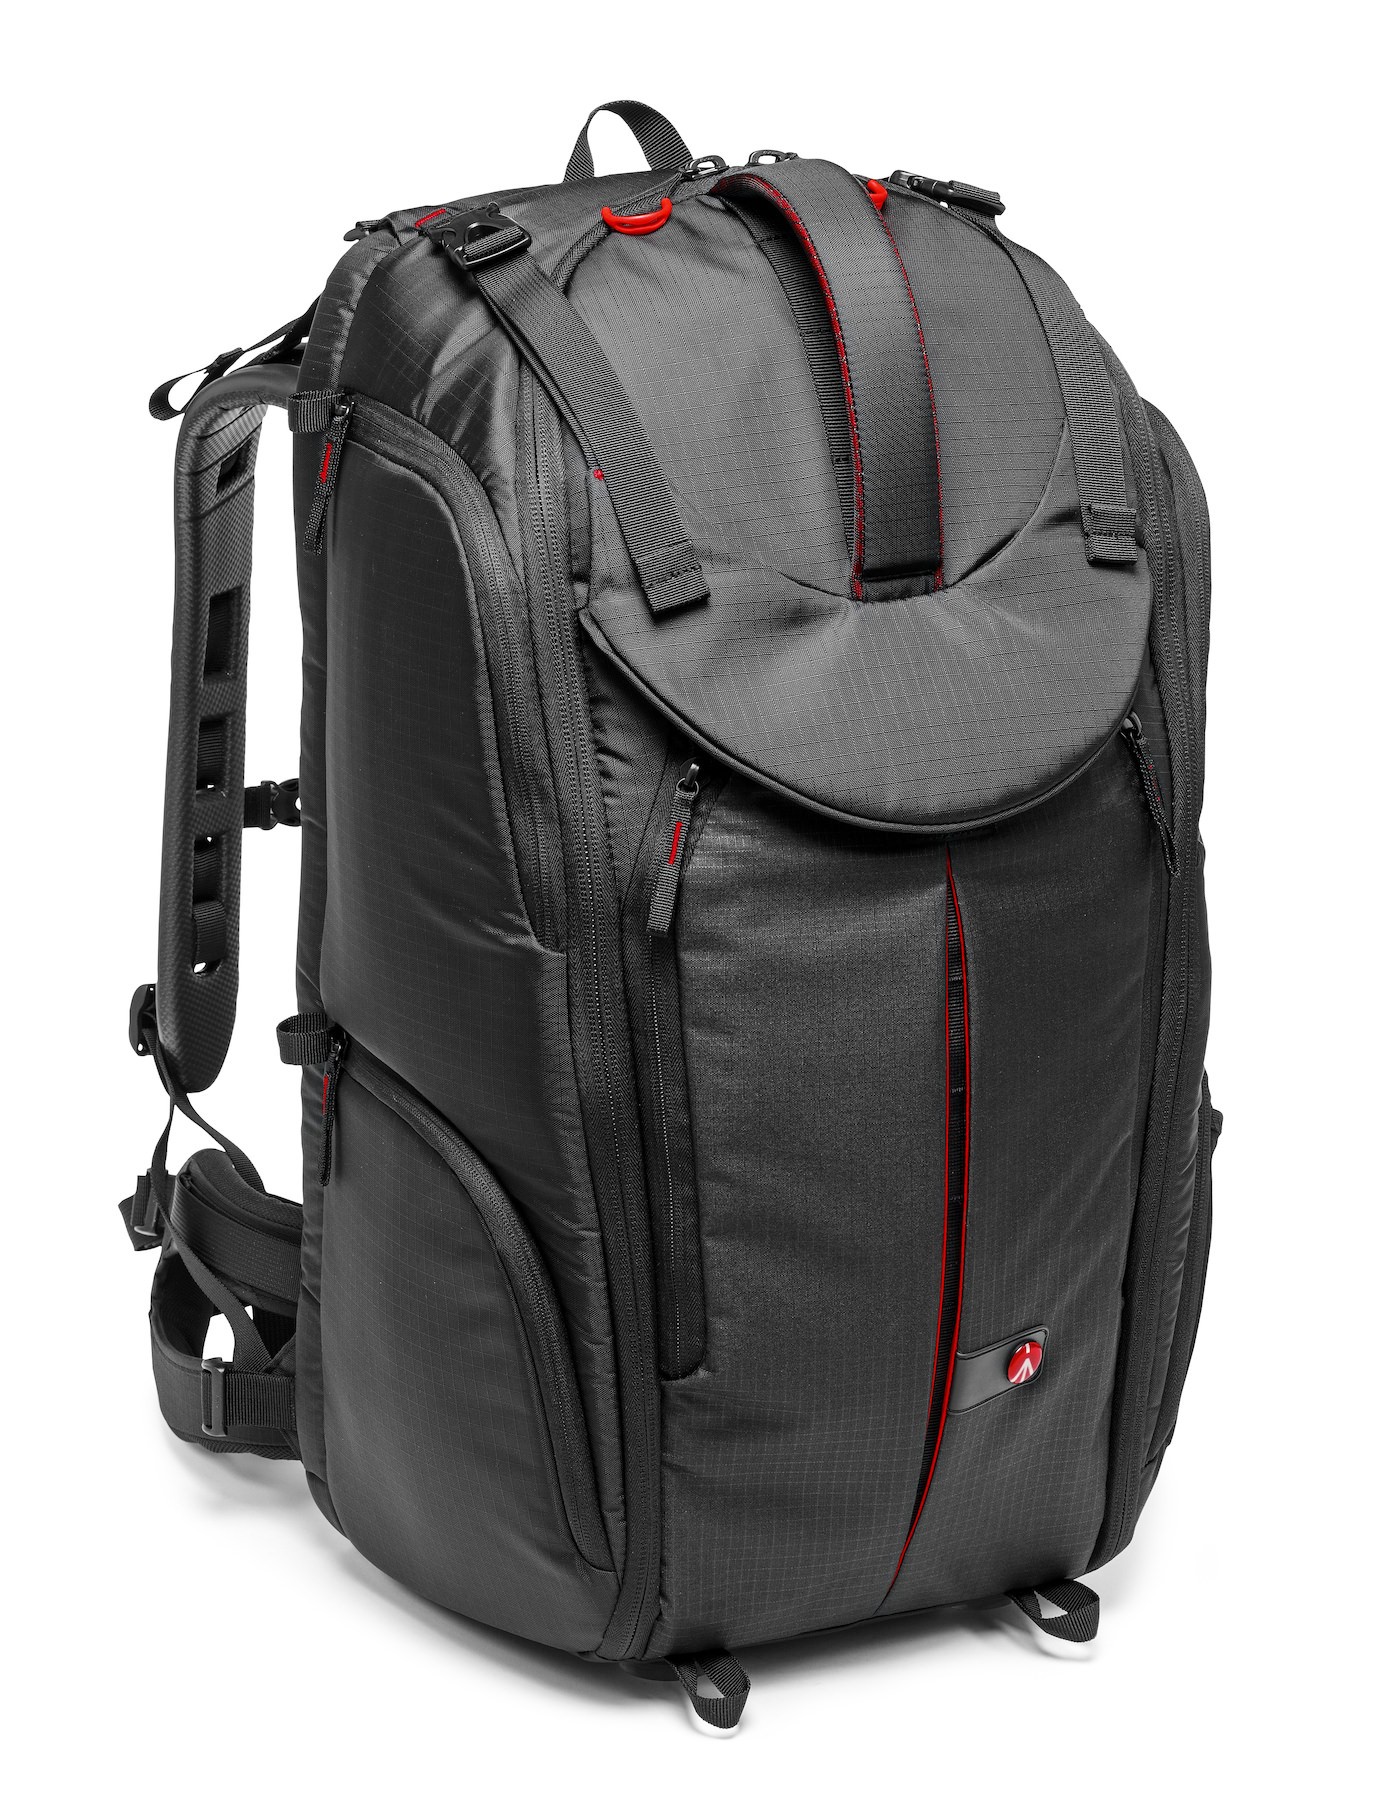 Pro Light camera backpack PV-610, camcorder/VDSLR